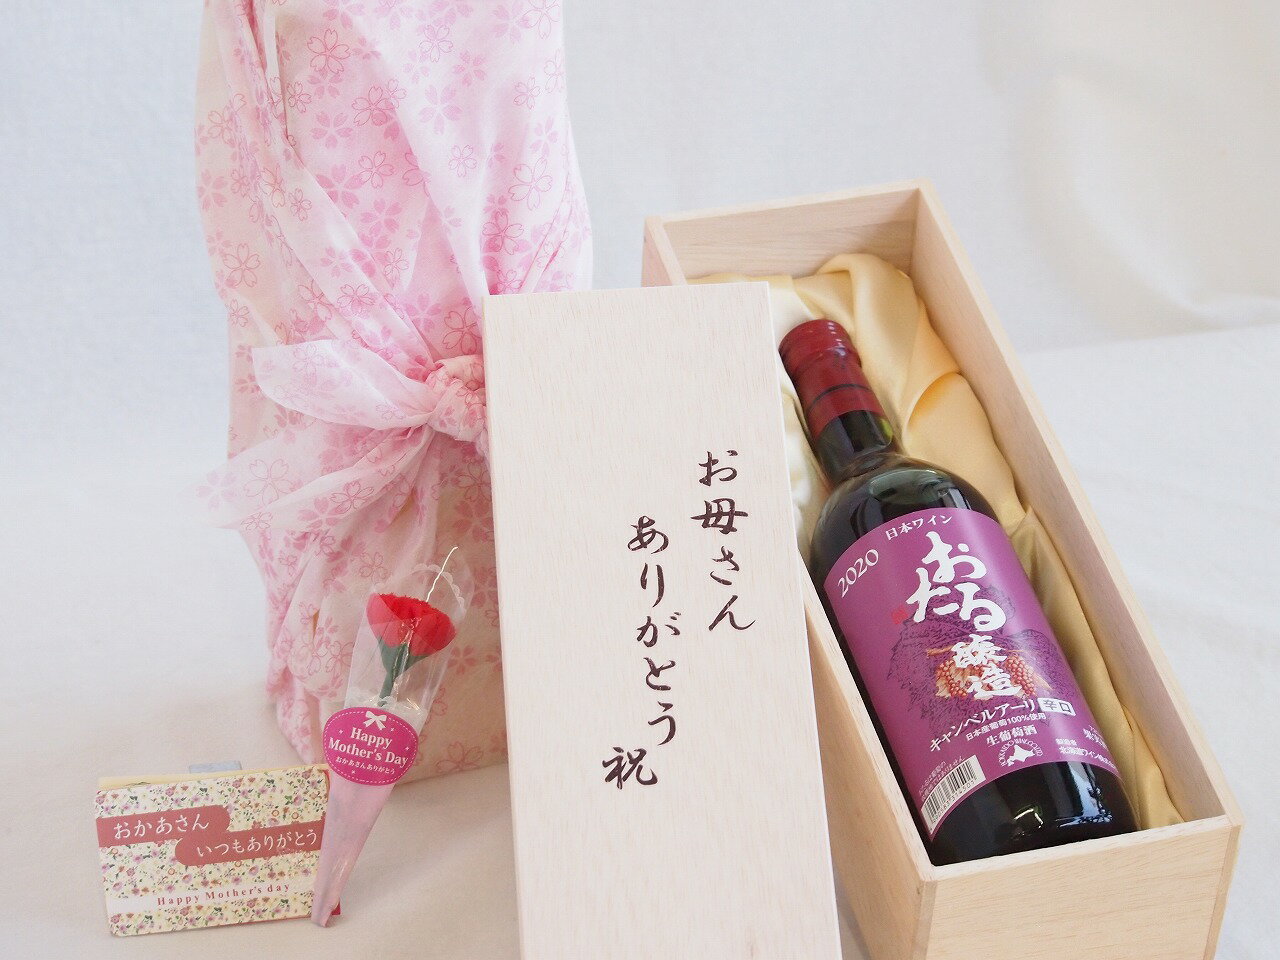 母の日 お母さんありがとう木箱セット 日本産葡萄100%使用おたる醸造キャンベルアーリ赤ワイン辛口 (北海道) 720ml 母の日カードとカーネイション付